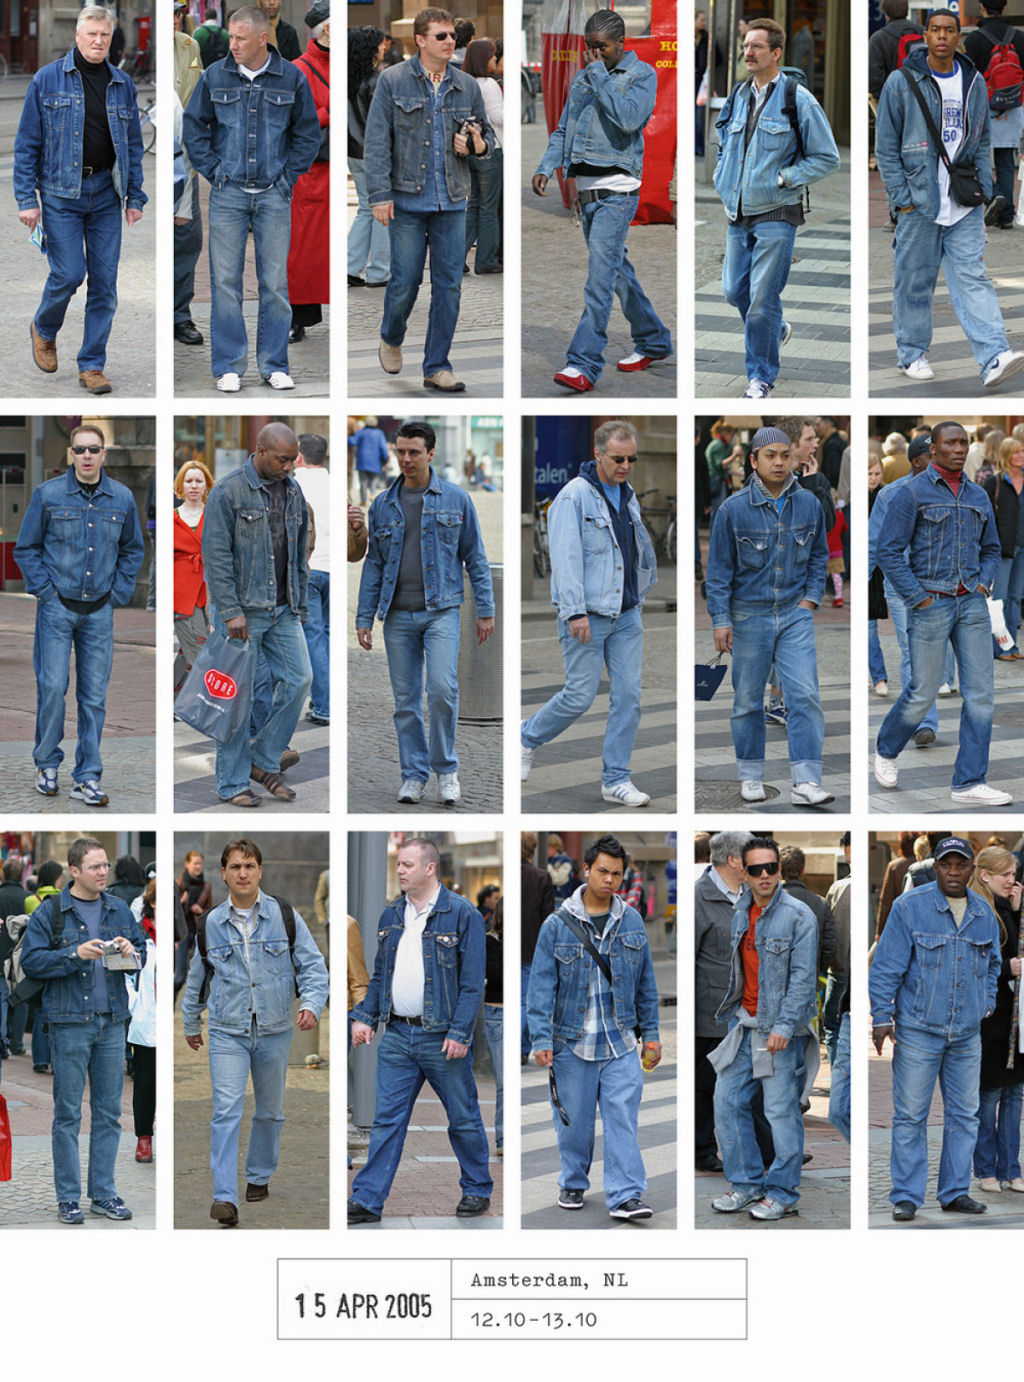 Este fotógrafo passou 20 anos documentando como todos nos vestimos iguais 01